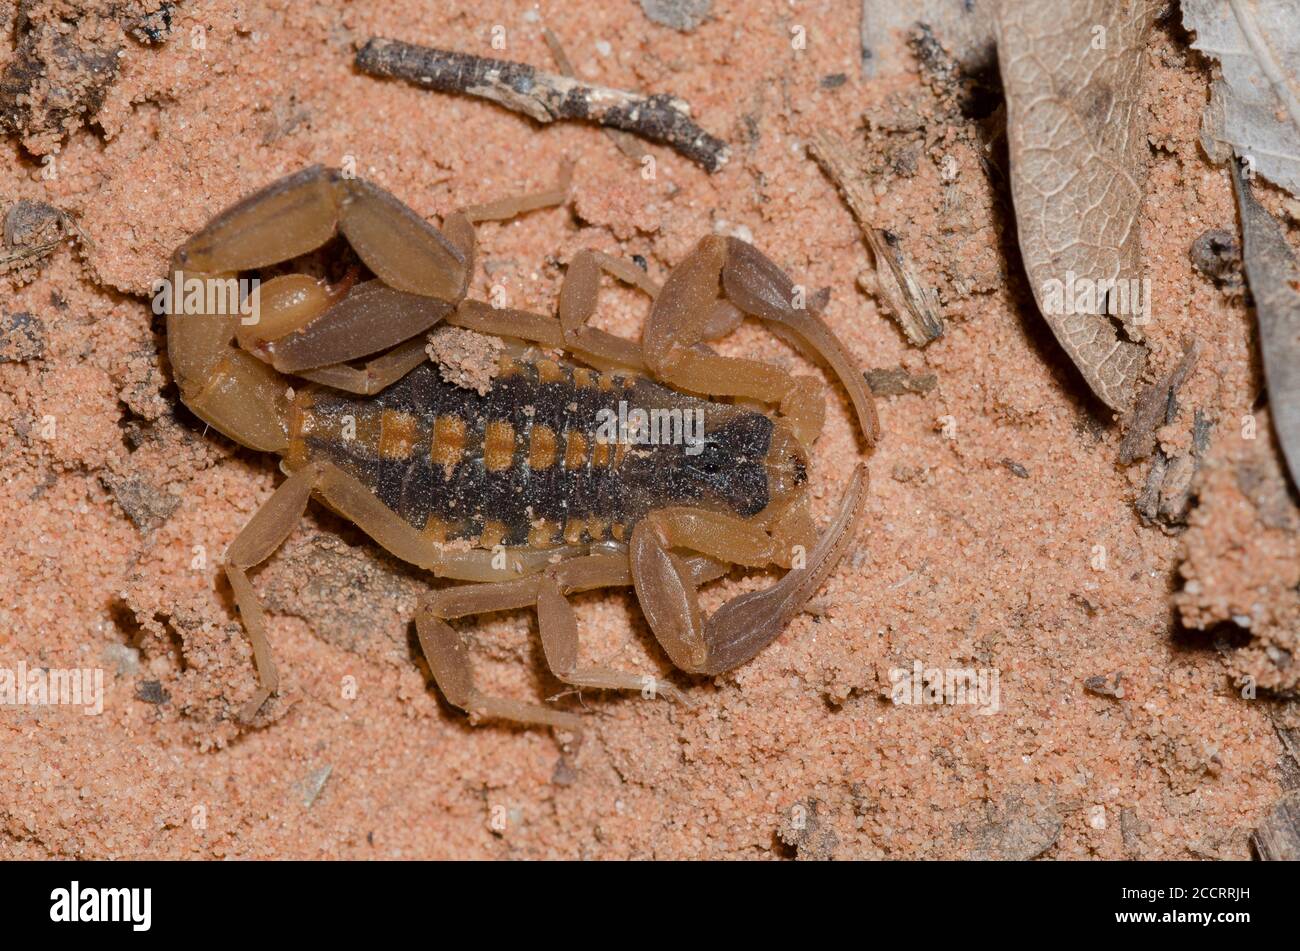 Striped Bark Scorpion, Centruroides vittatus Stock Photo